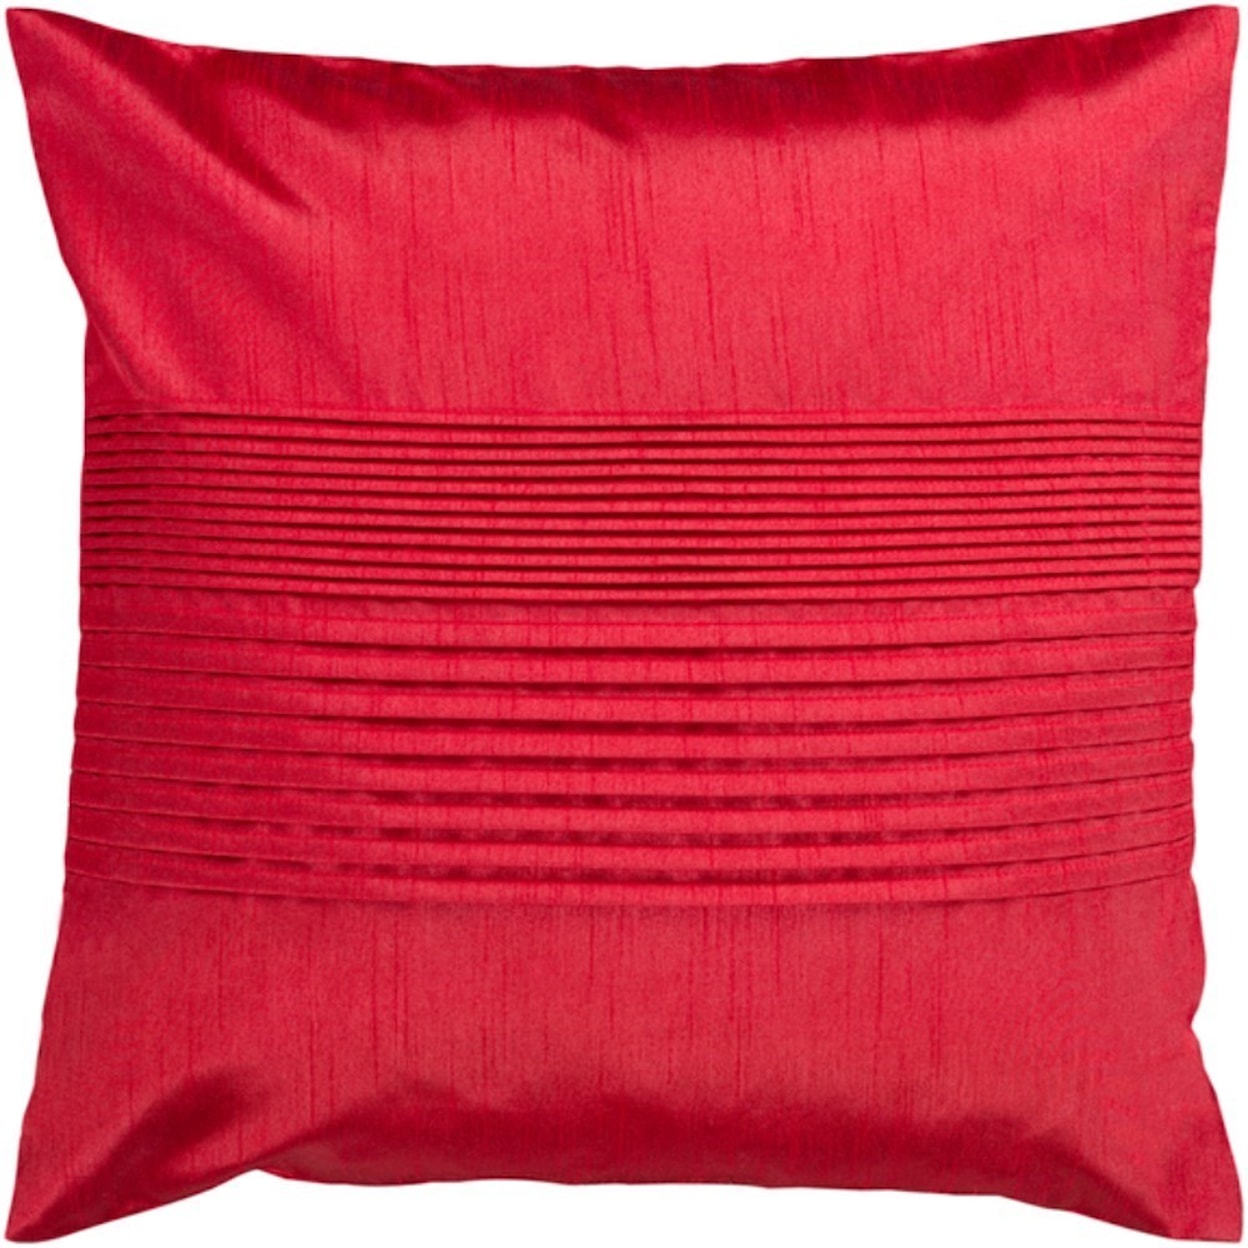 Surya Pillows CV012-1818P 18 x 18 Decorative Pillow, Suburban Furniture